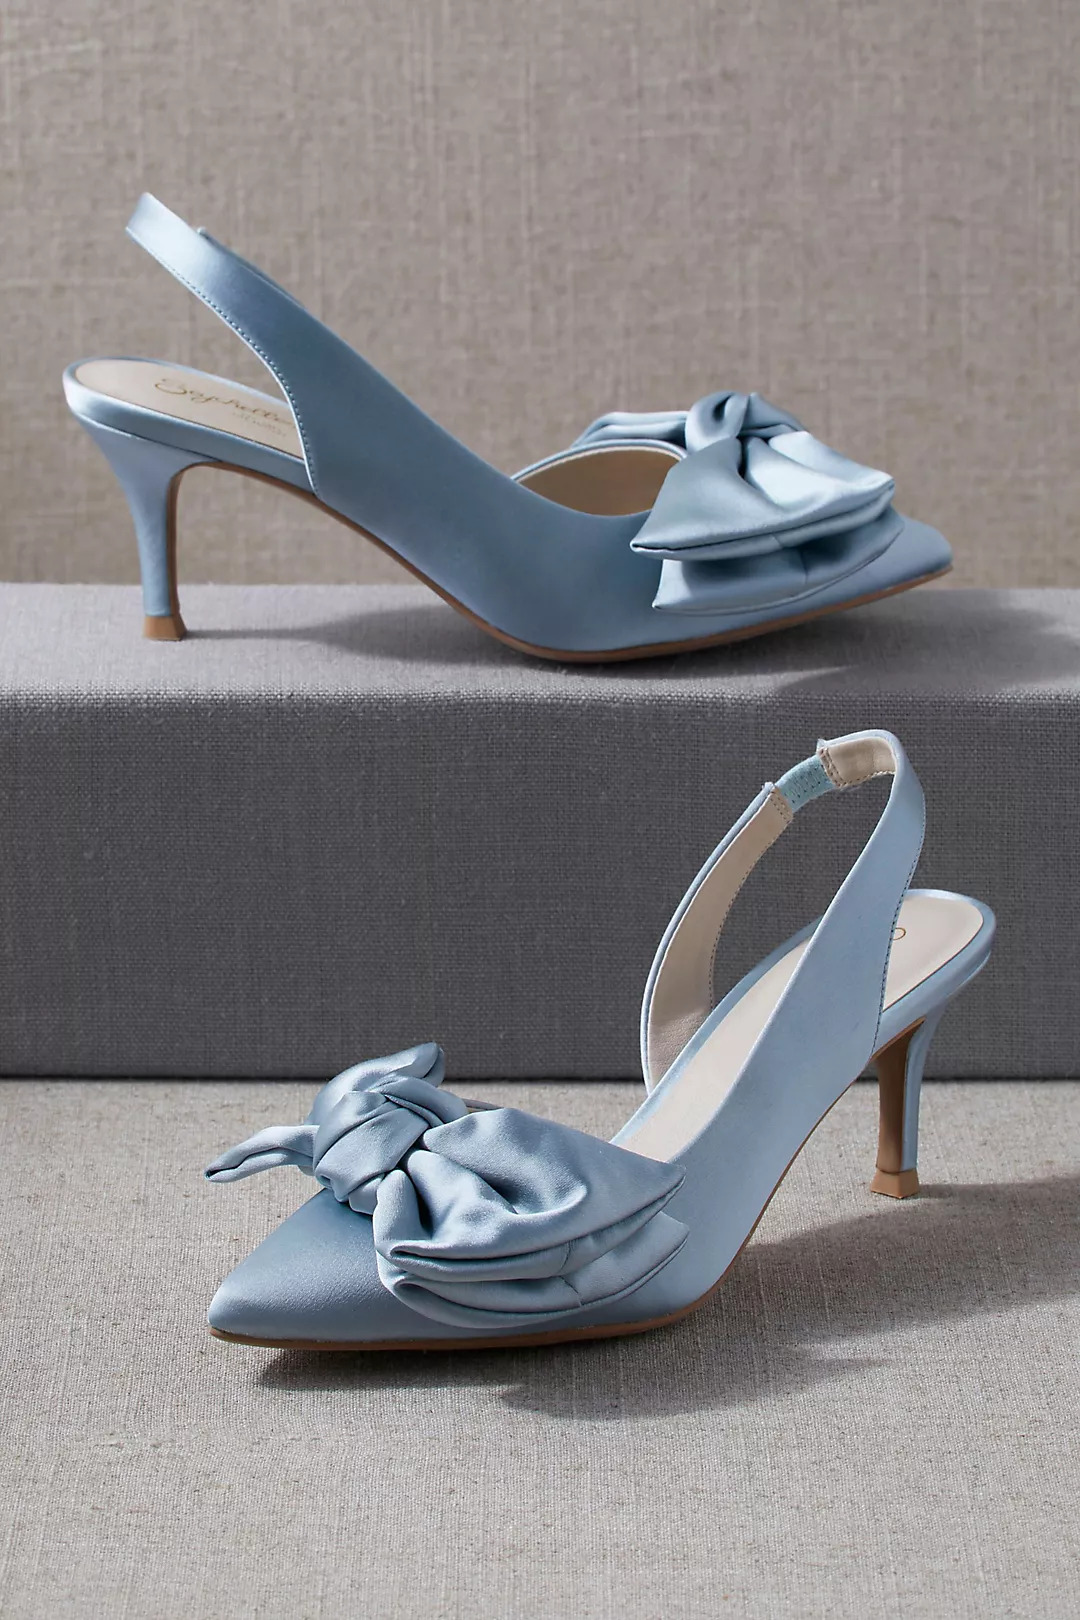 Anthropologie Seychelled Neve Blue Heels Best Blue Bridal Shoes Heels Booties Sandals Flats for Your Something Blue Wedding Bridal Musings - 22 Đôi giày cô dâu màu xanh lam cho 'Thứ gì đó màu xanh lam' của bạn